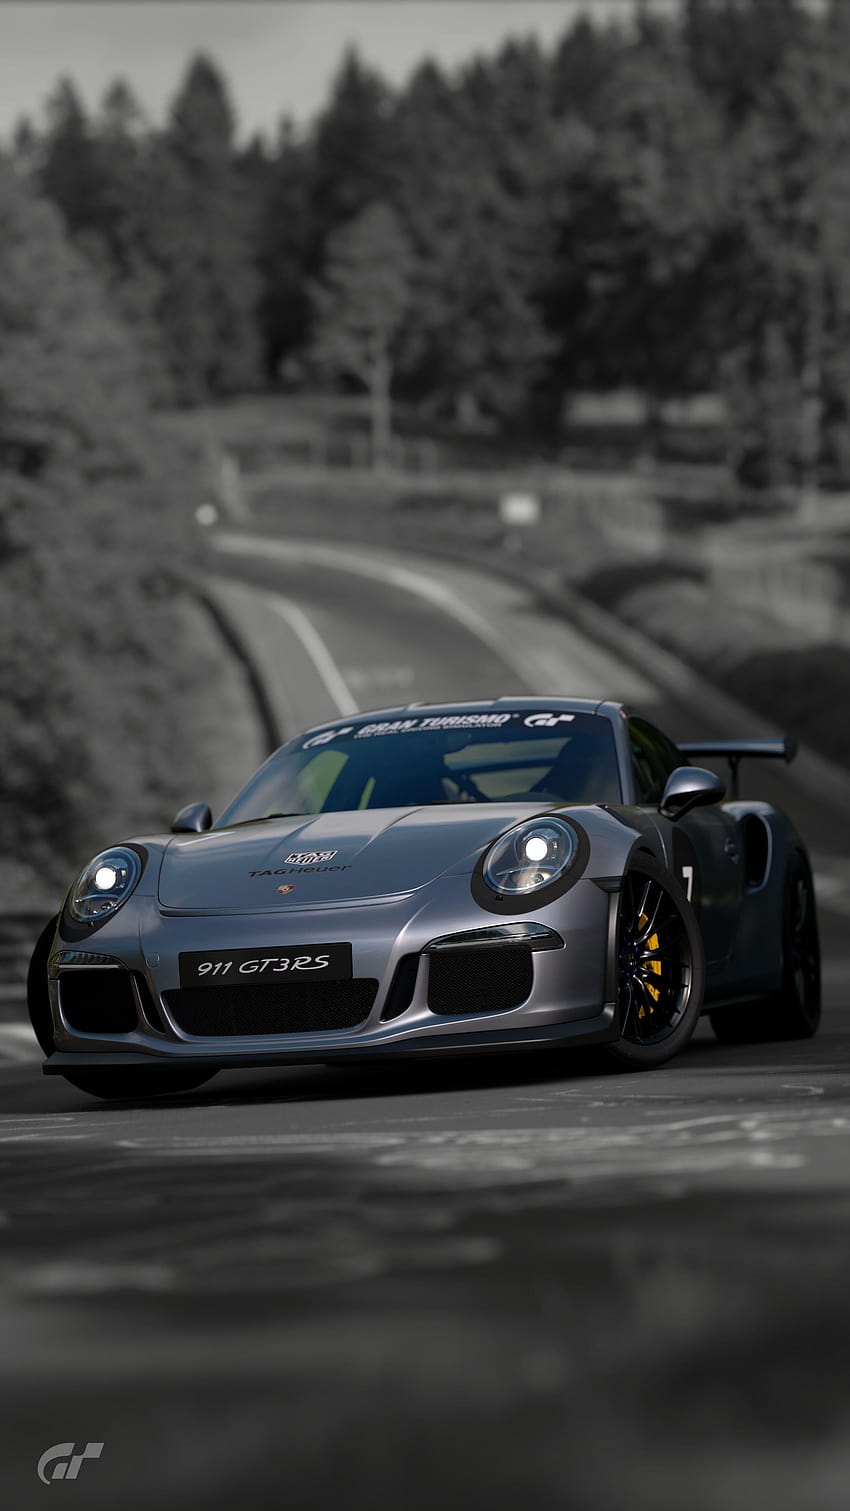 Porsche Gt3 Rs Screensaver, & backgrounds, porsche gt2 rs iphone HD phone wallpaper